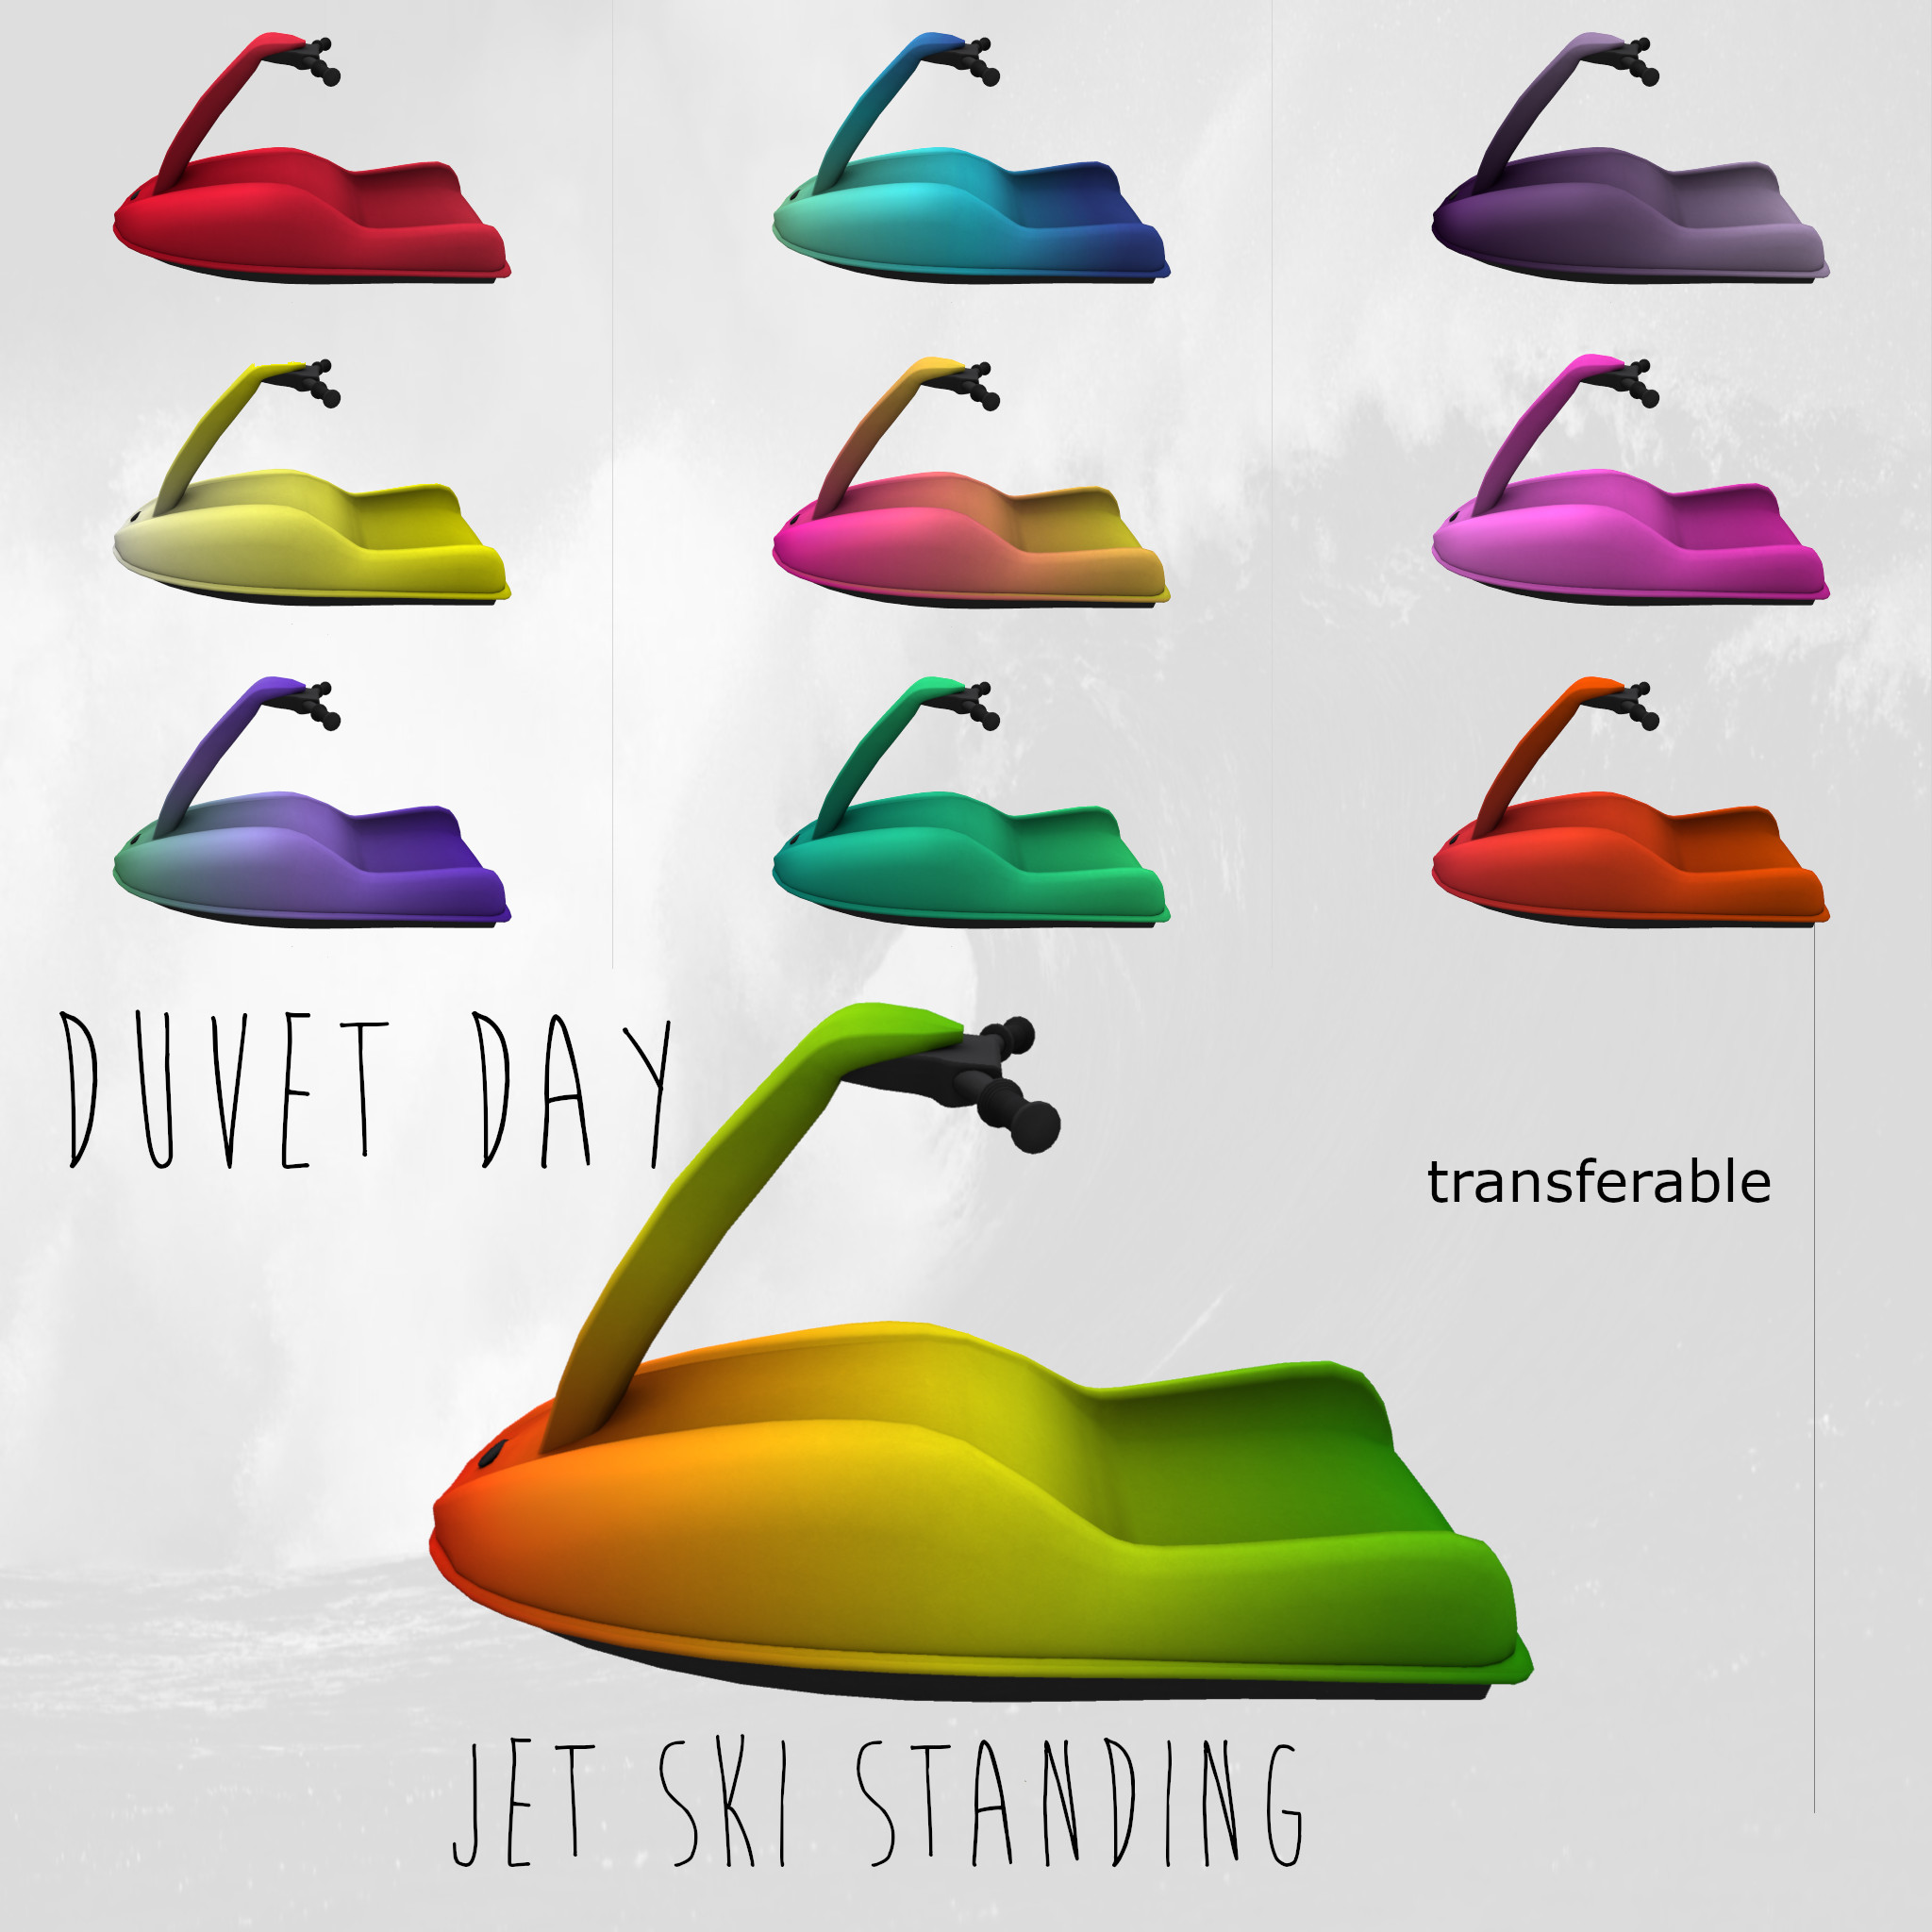 Duvet Day – Jet Ski Standing